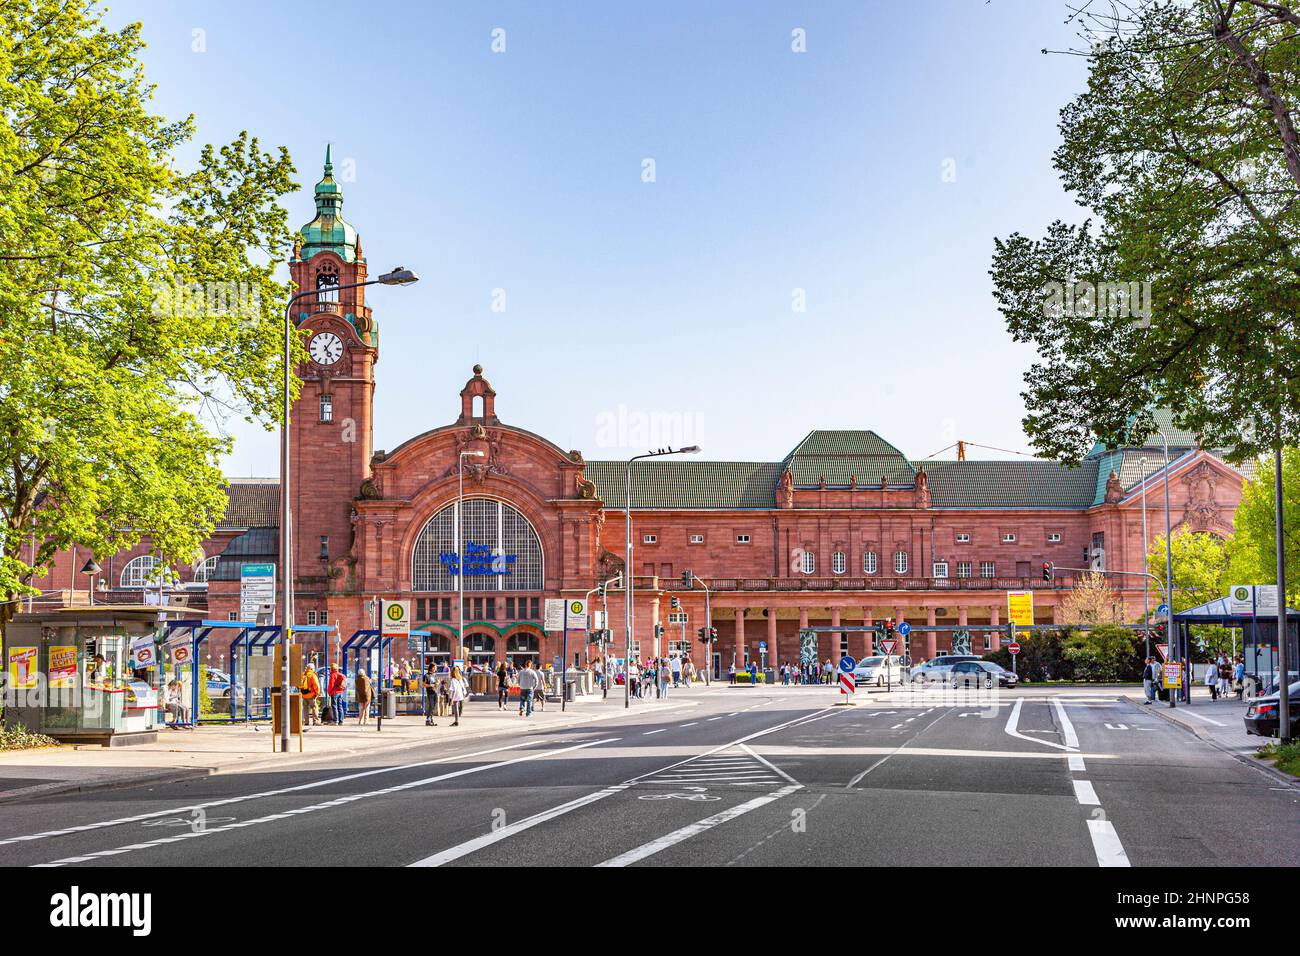 Berühmter klassizistischer alter Bahnhof in Wiesbaden mit Menschen Stockfoto